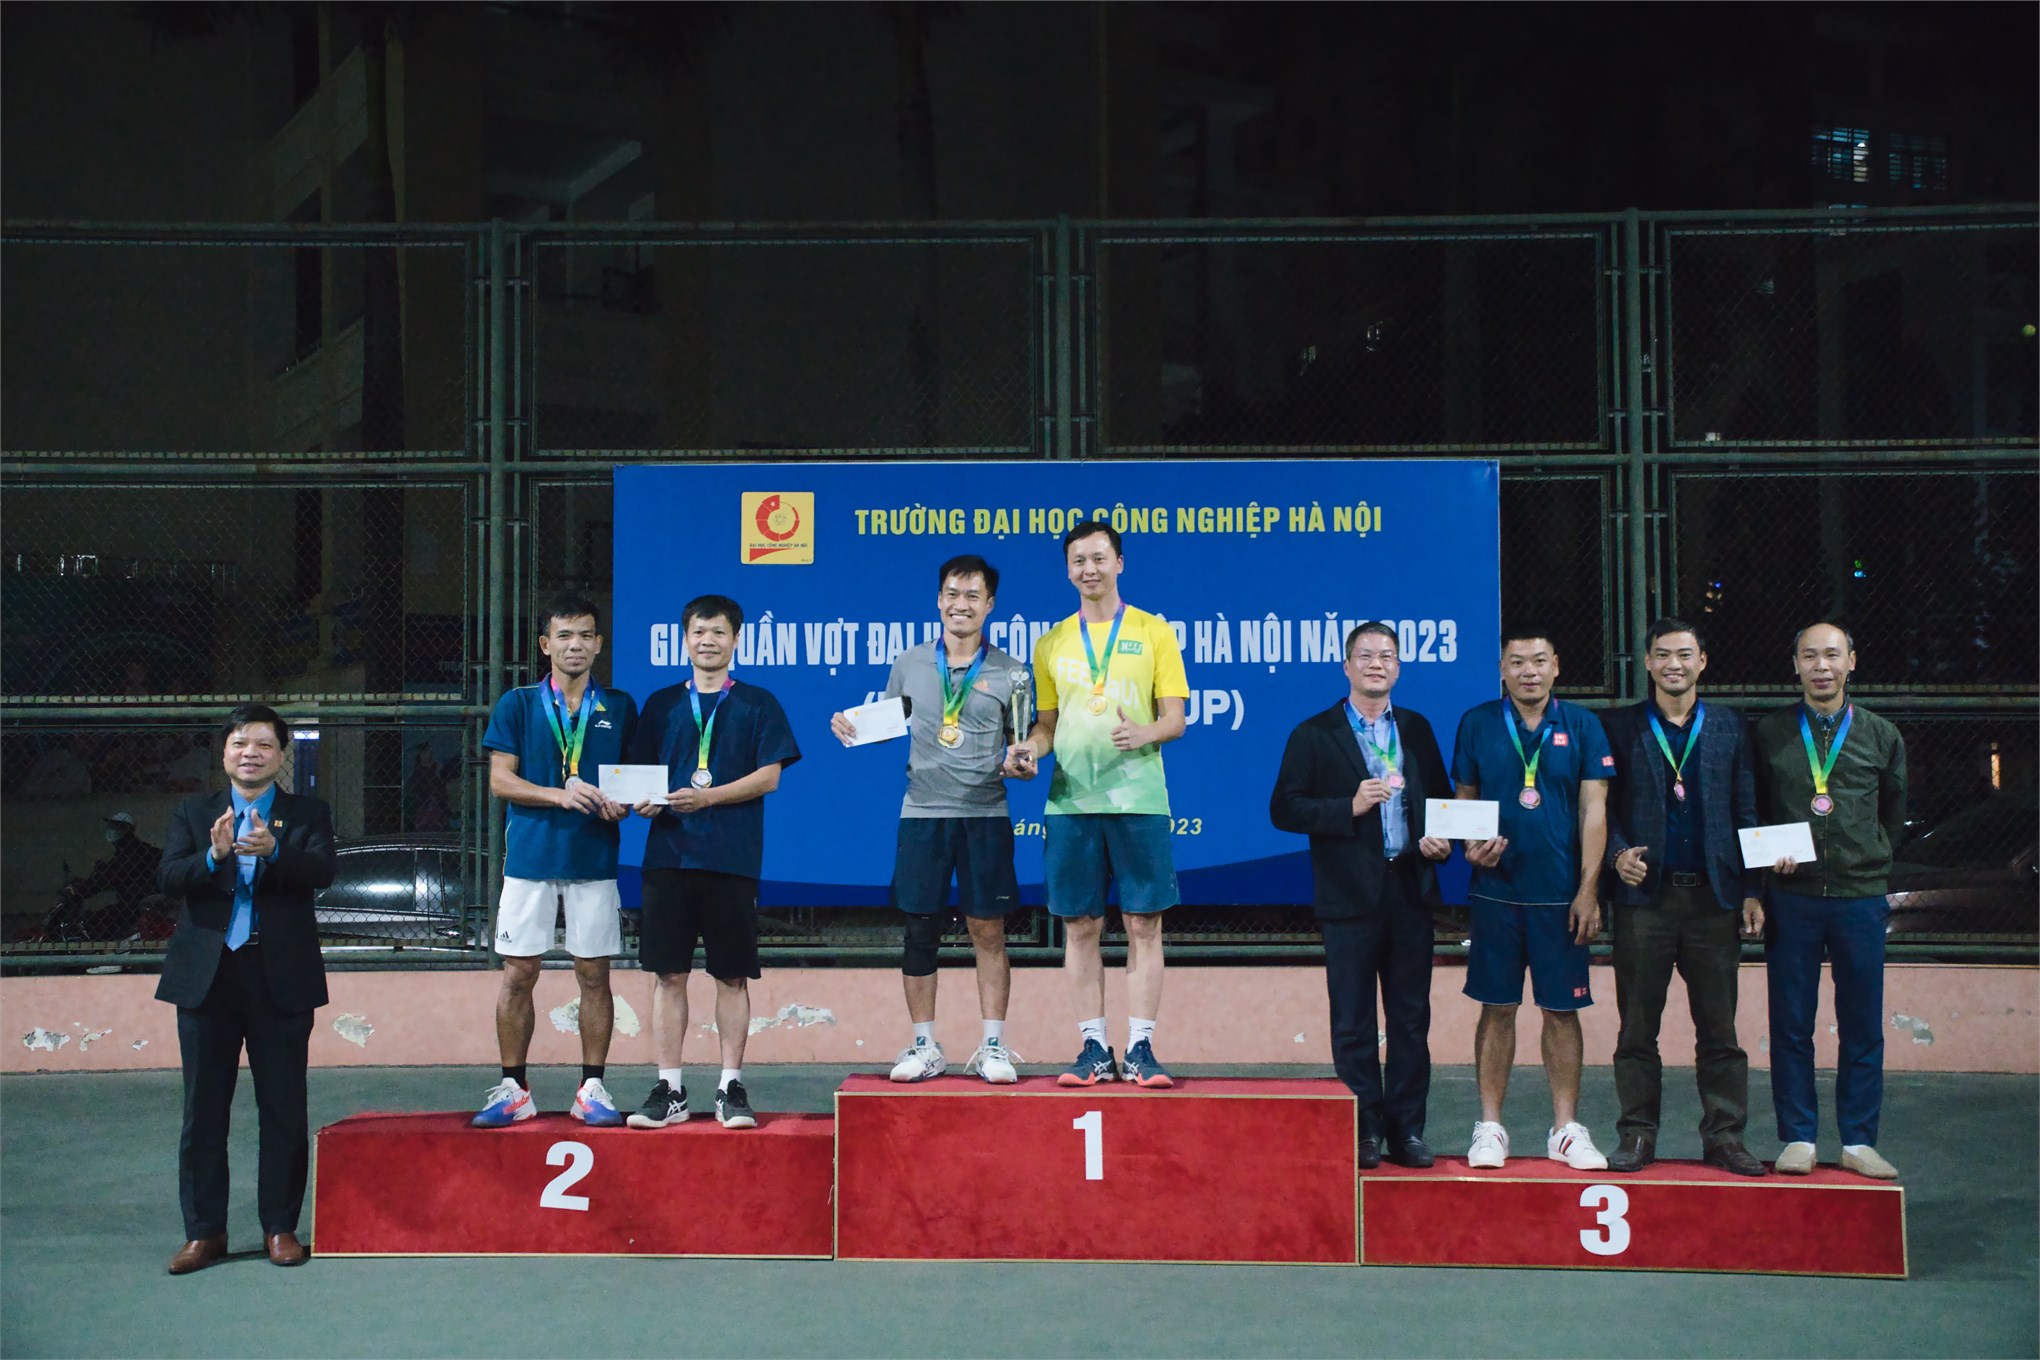 Chung kết Giải quần vợt Đại học Công nghiệp Hà Nội năm 2023